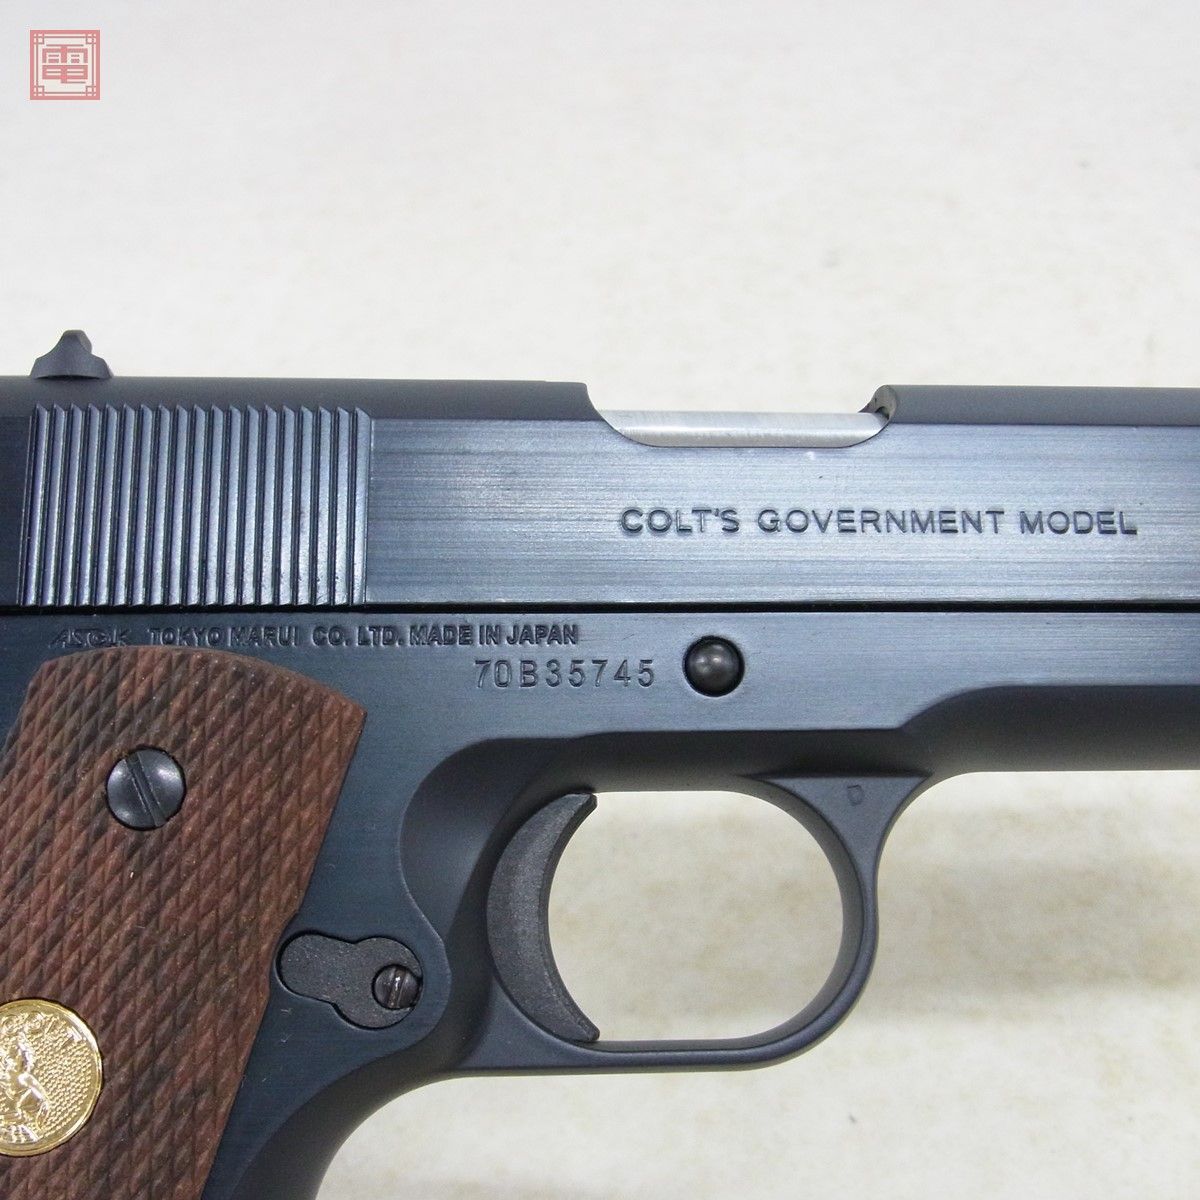  Tokyo Marui газ bro Colt Government Mark IV серии 70 GBB свободный затвор текущее состояние товар [20